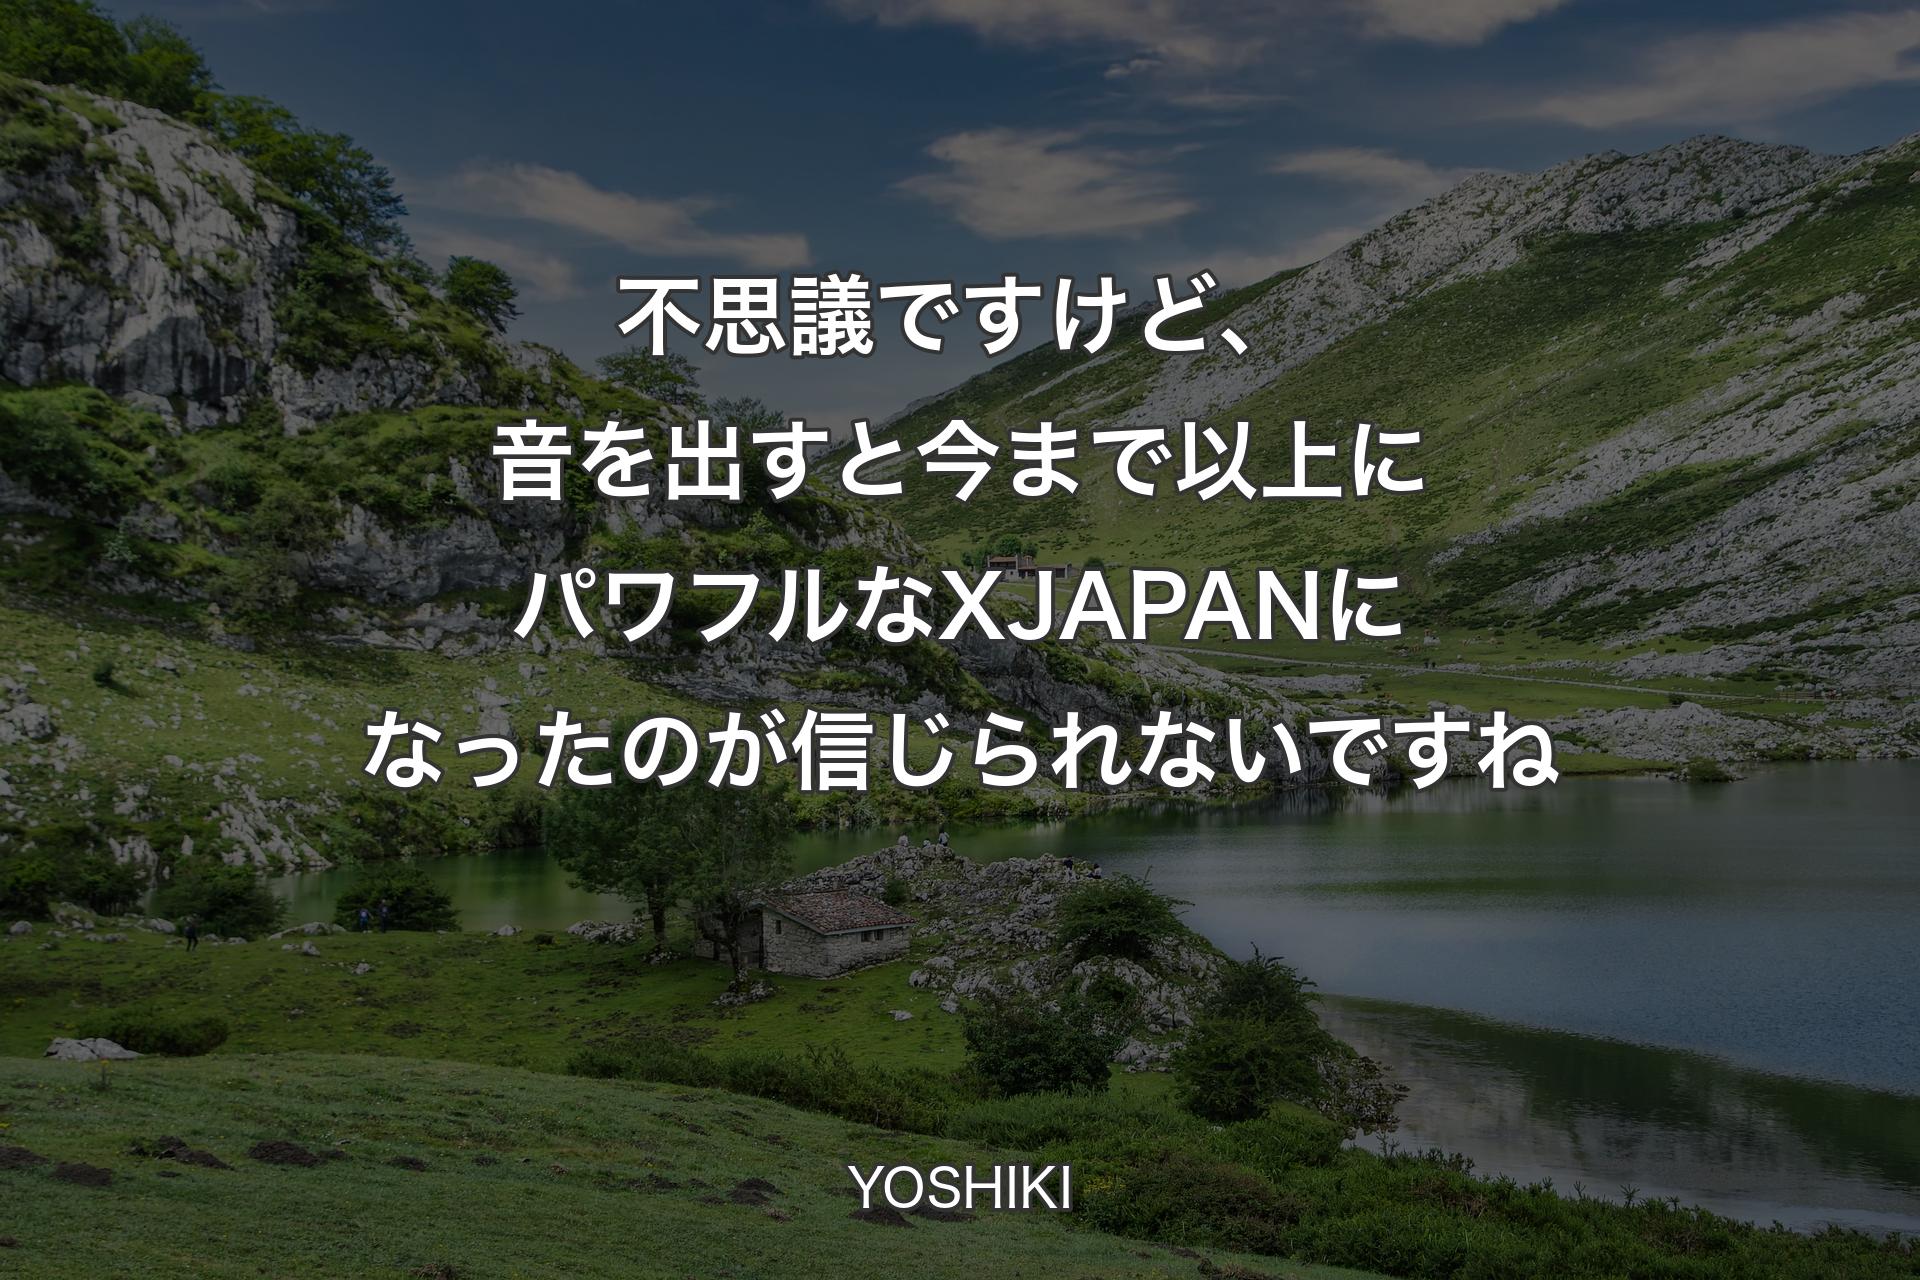 不思議ですけど、音を出すと今まで以上にパワフルなX JAPANになったのが信じられないですね - YOSHIKI